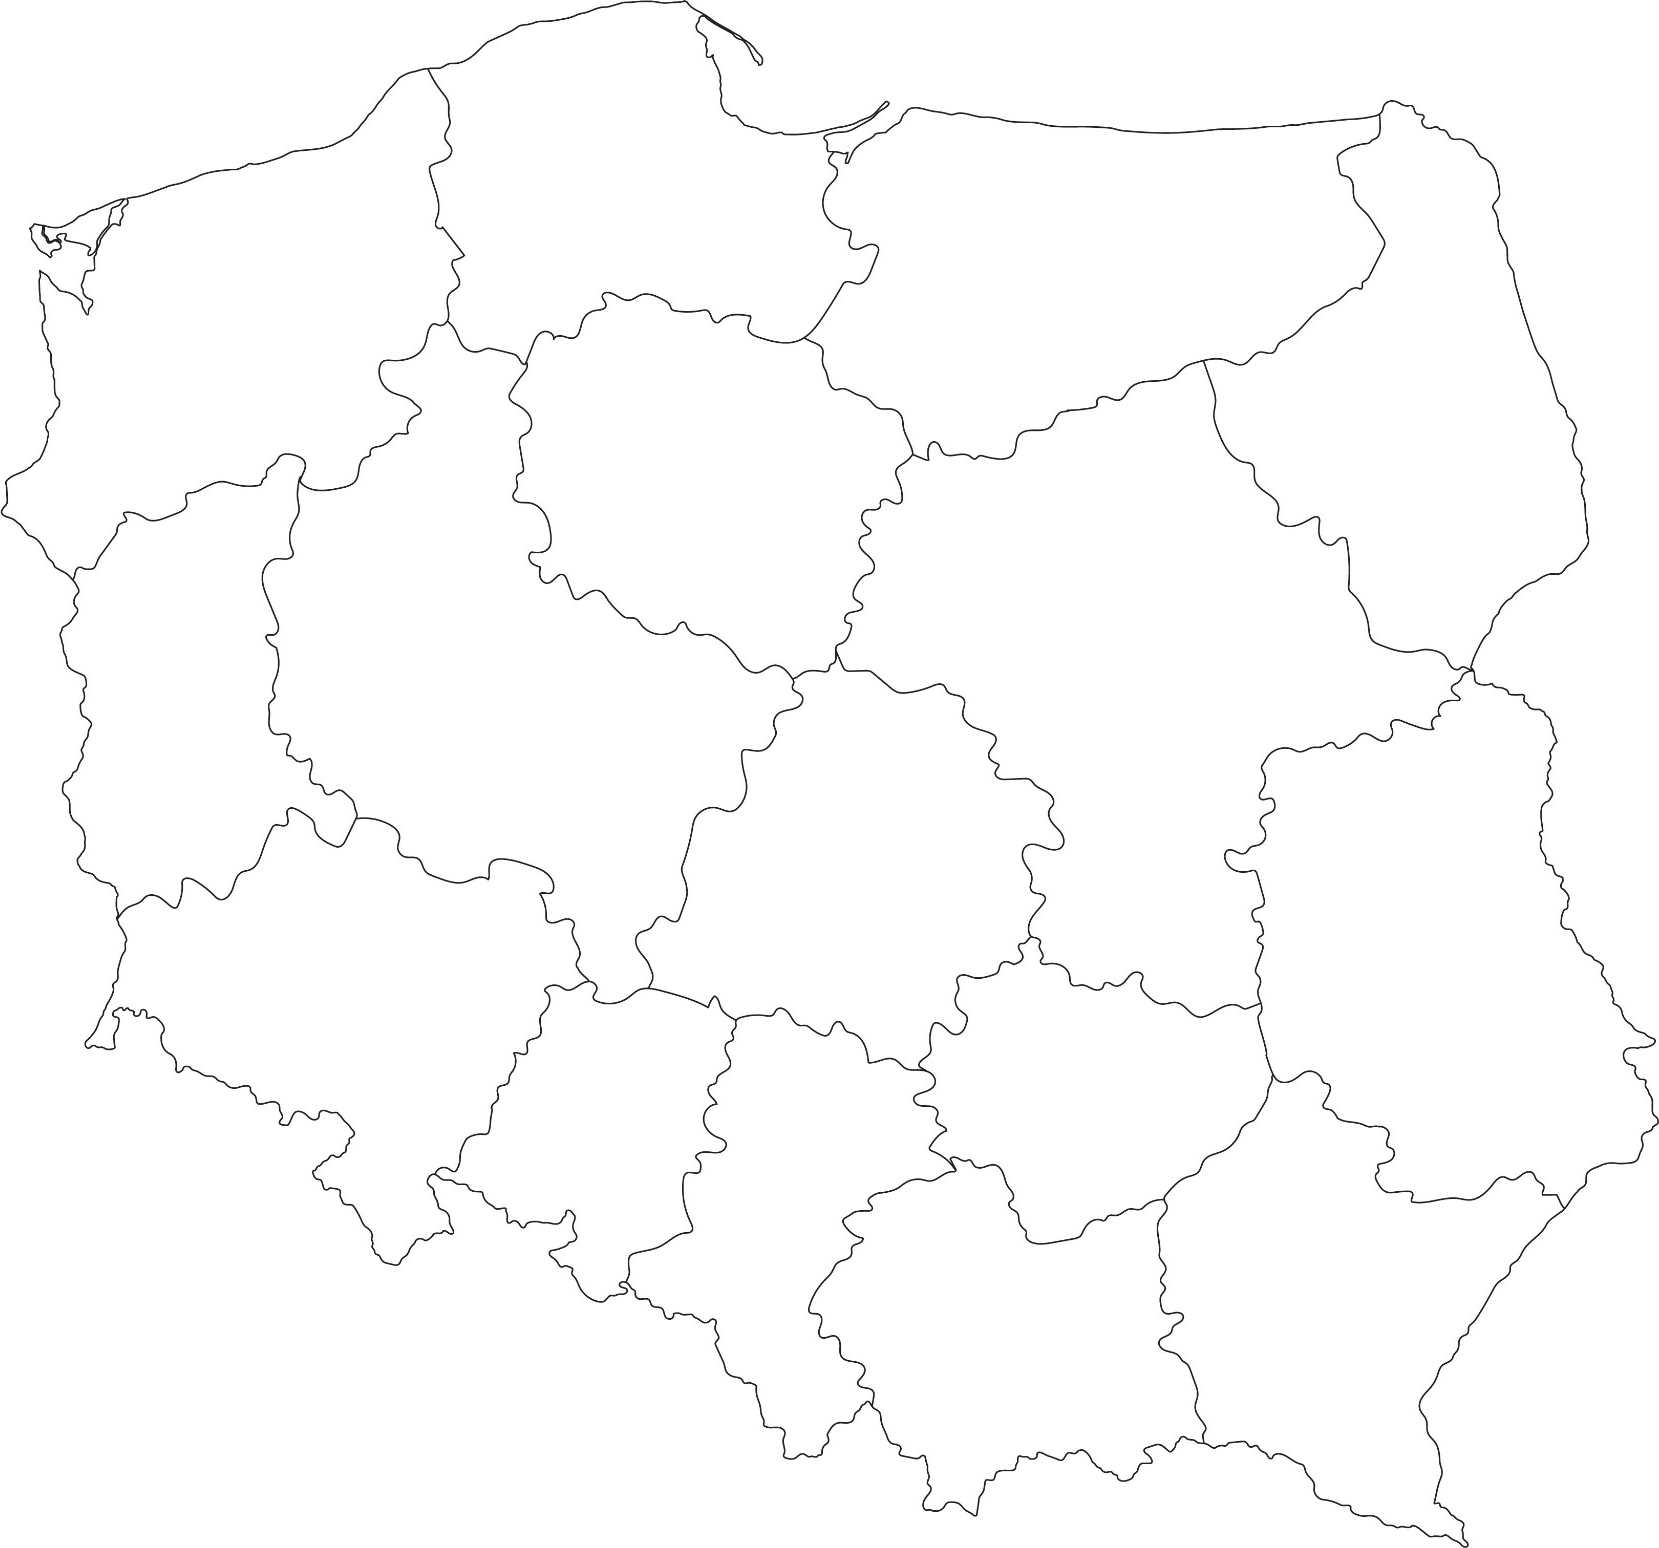 schemat-mapy-polski-wojewodztwa